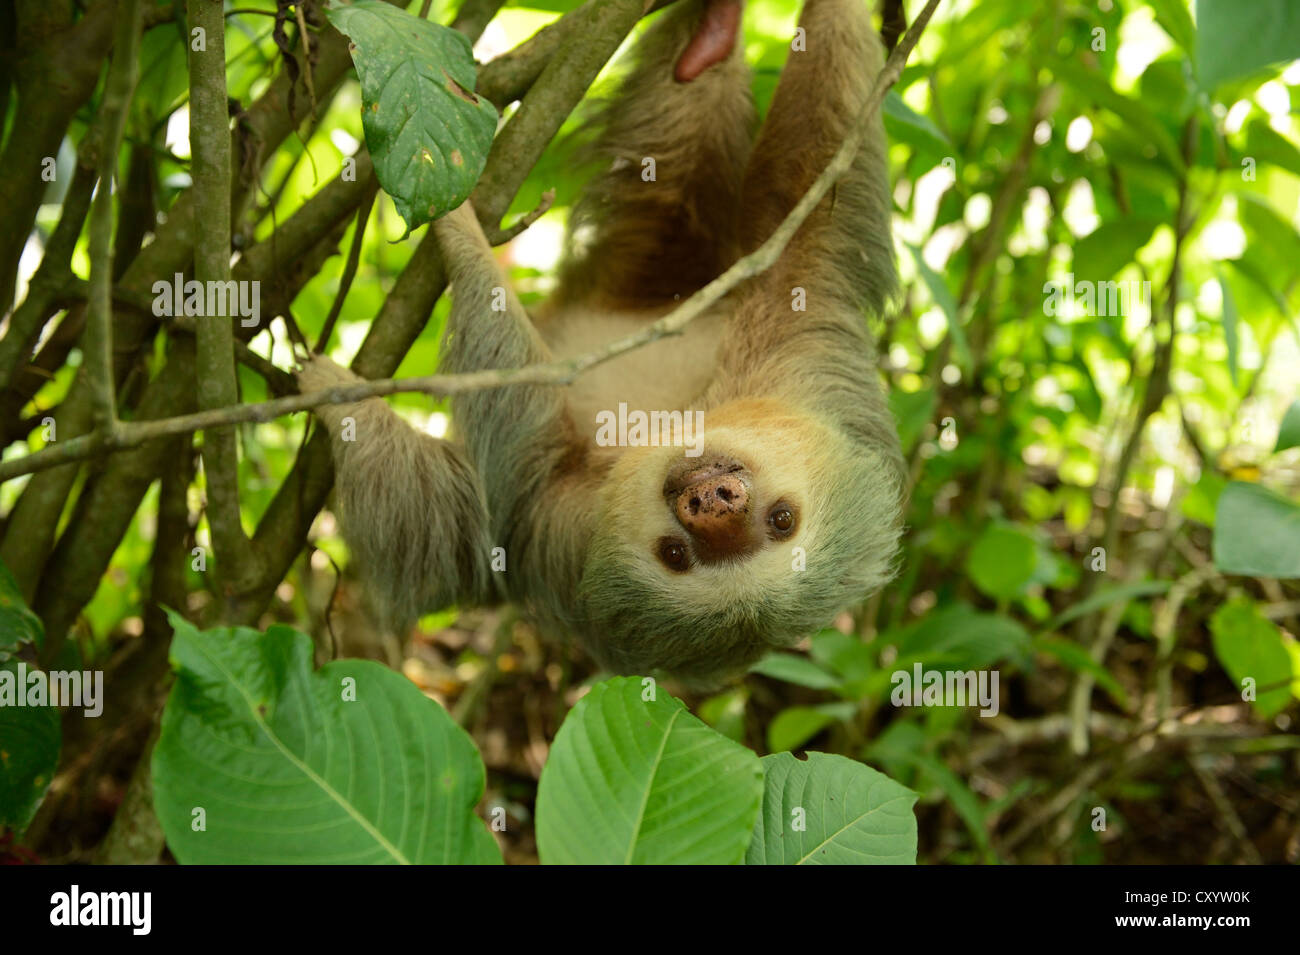 Hoffmann per le due dita bradipo (Choloepus hoffmanni), appeso a testa in giù in un albero, La Fortuna, Costa Rica, America Centrale Foto Stock